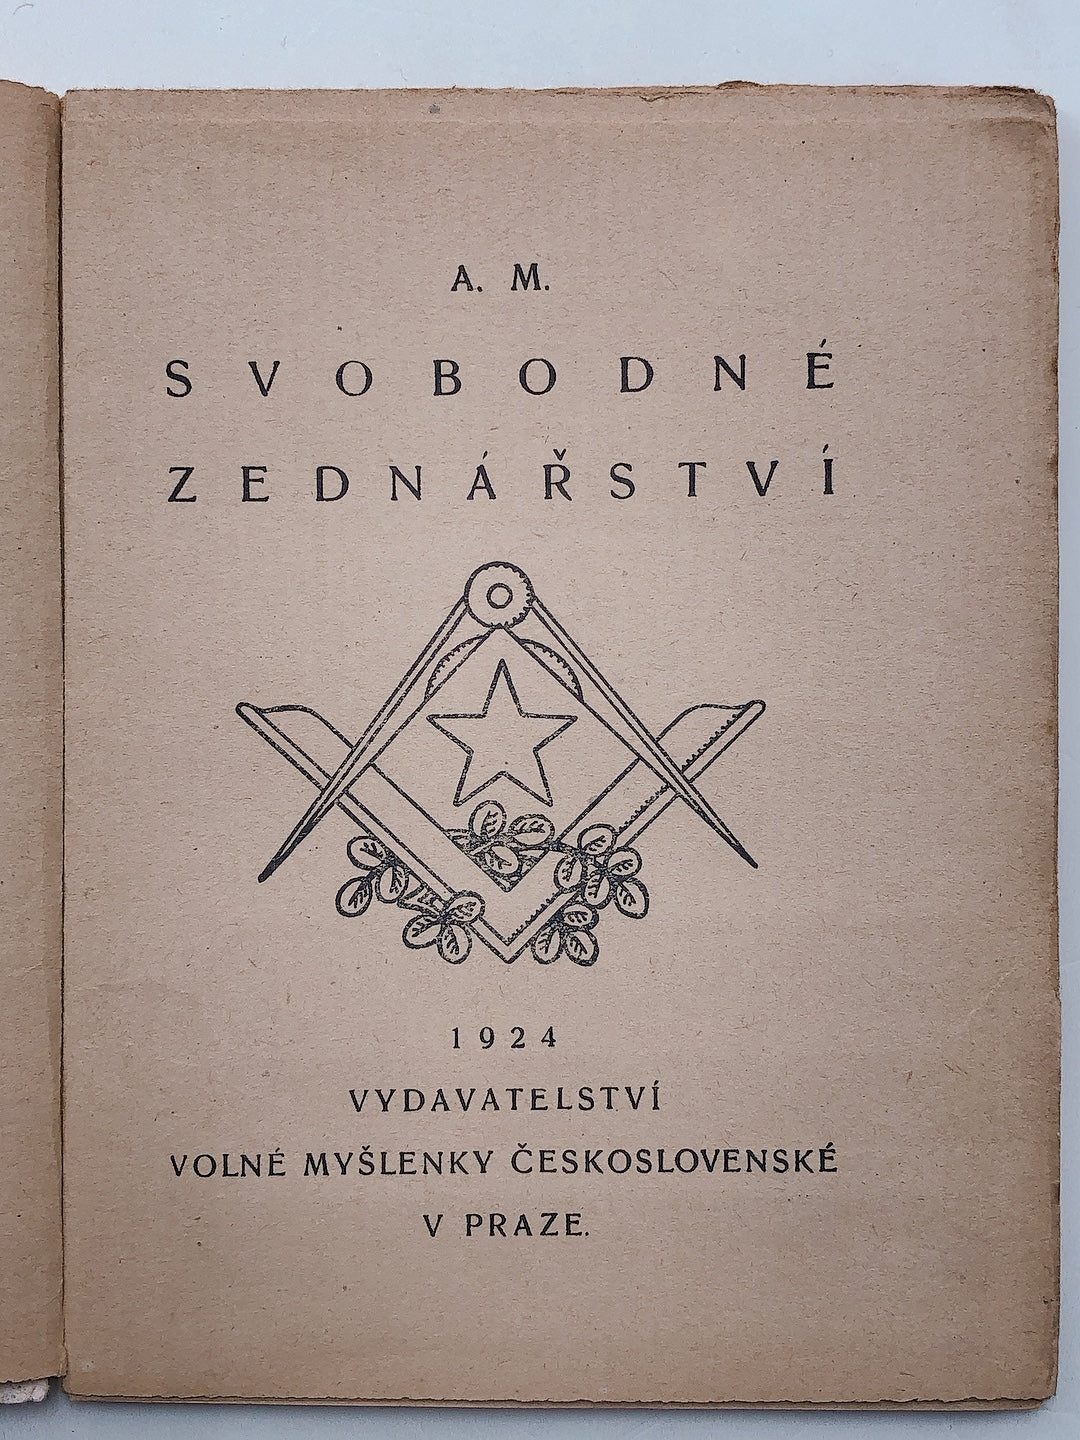 アルフォンス・ミュシャ著「Svobodne zednarstvi」フリーメイソンの本